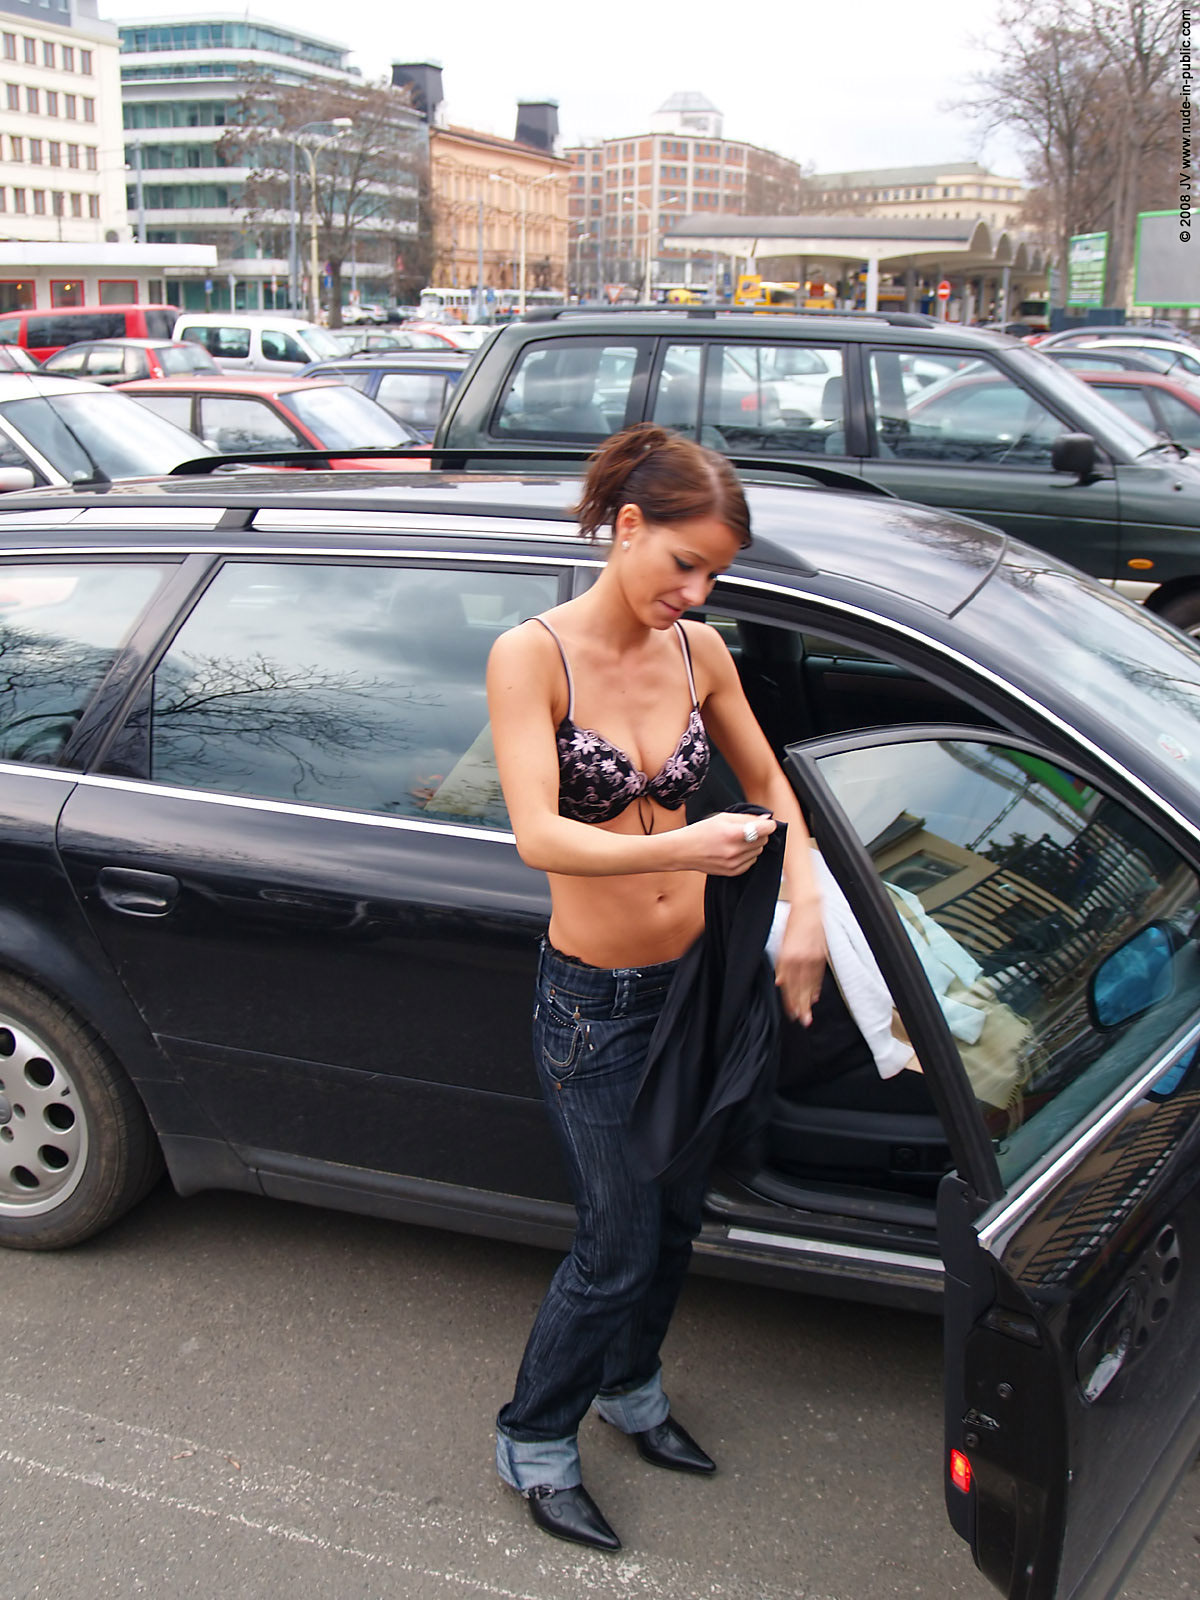 melisa-u-car-audi-flash-on-parking-nude-in-public-07